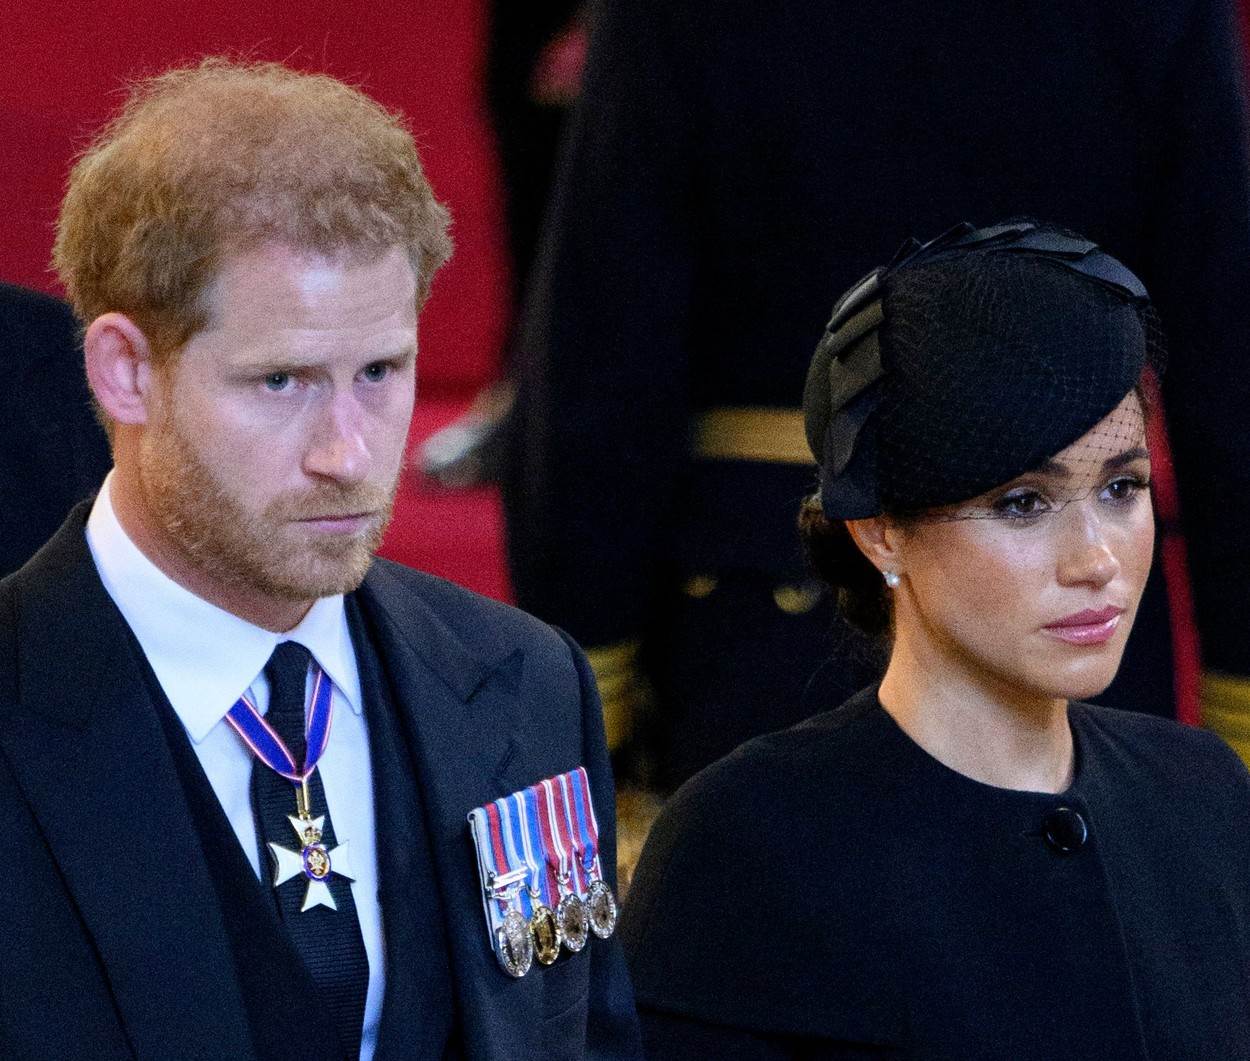  Megan Markl i princ Hari na sahrani kraljice elizabete. 